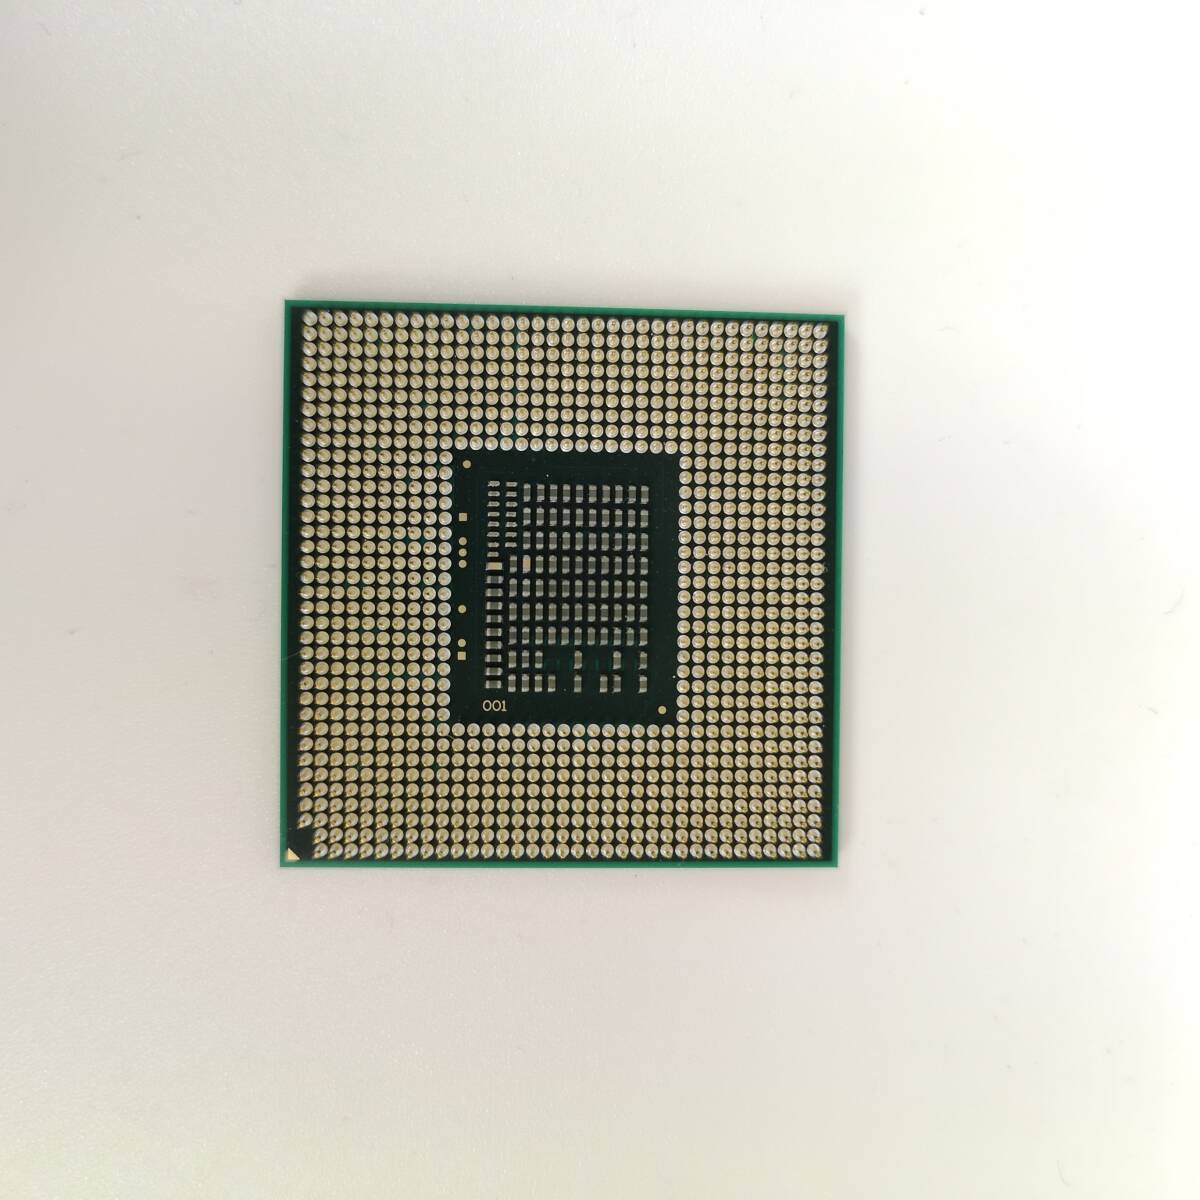 ジャンク CPU ノートパソコン intel Cerelon B800 2M 1.5GHz 動作確認済み J00017 PCパーツ CPU ノートパソコン PYT1 _画像2